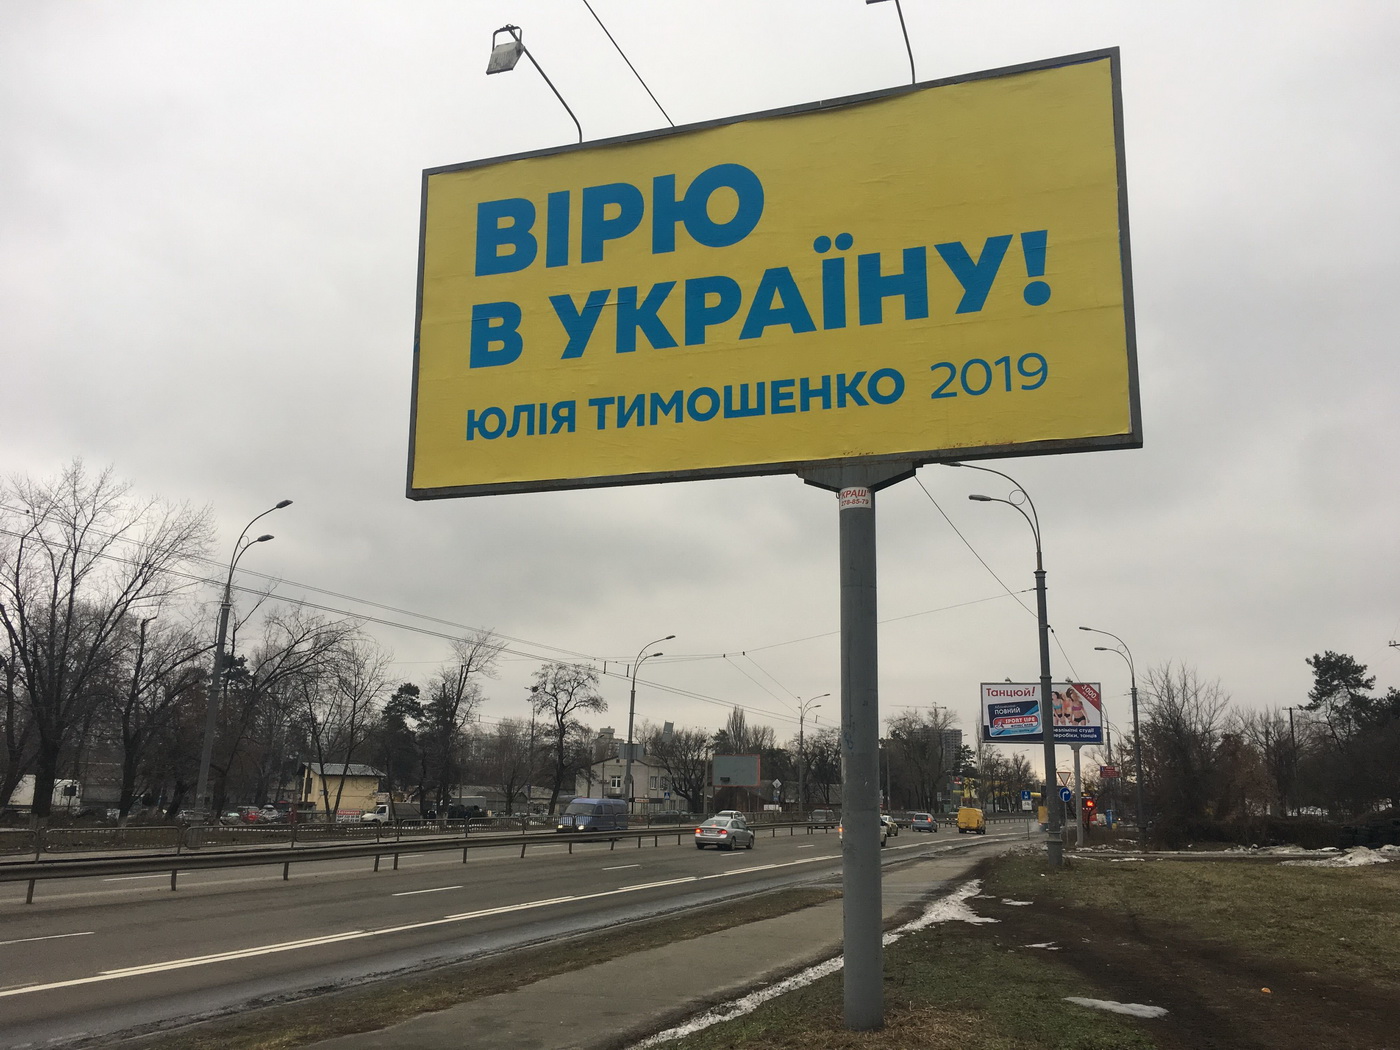 07 02 2019 Kyiv bilbordy tymoshenko perova2